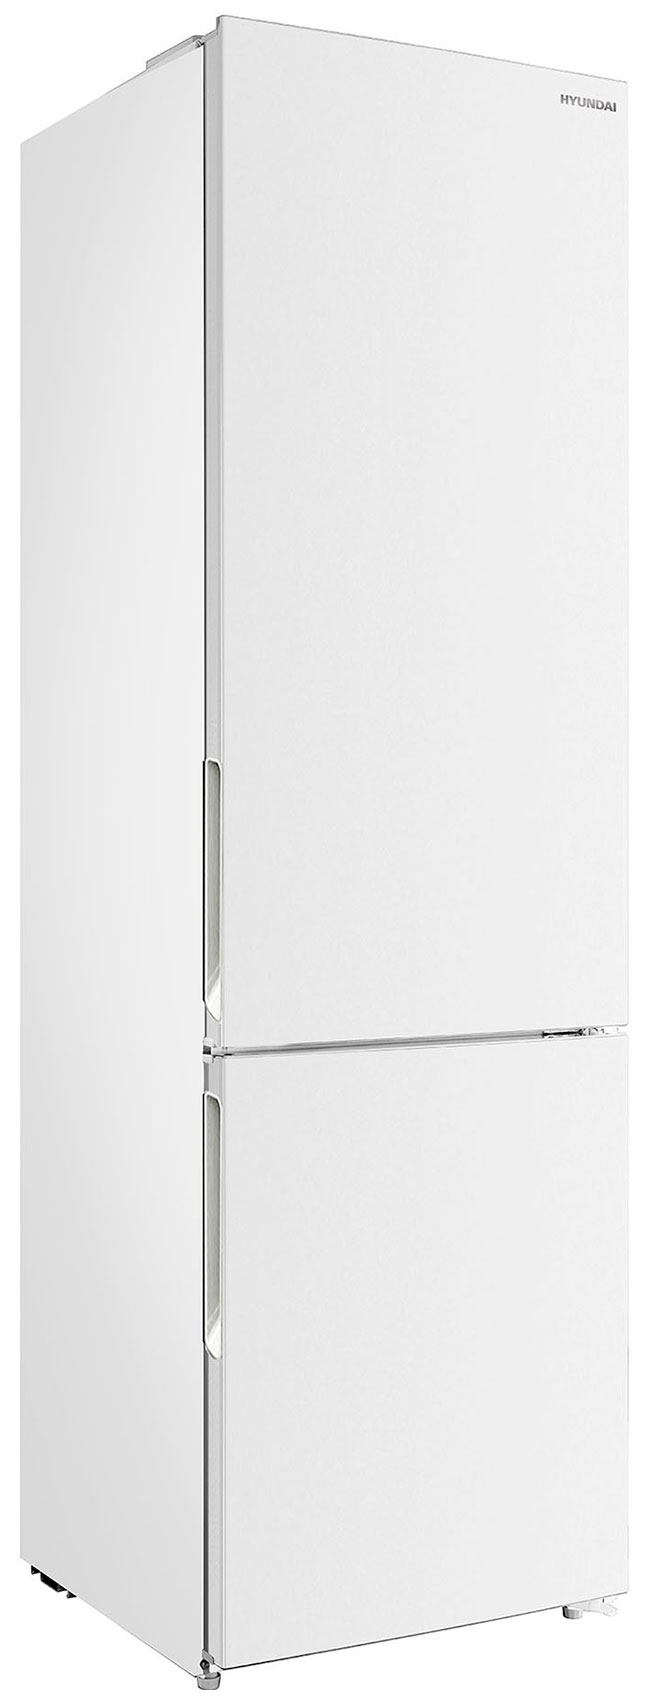 Двухкамерный холодильник Hyundai CC3593FWT белый холодильник hyundai cc2056fwt белый двухкамерный